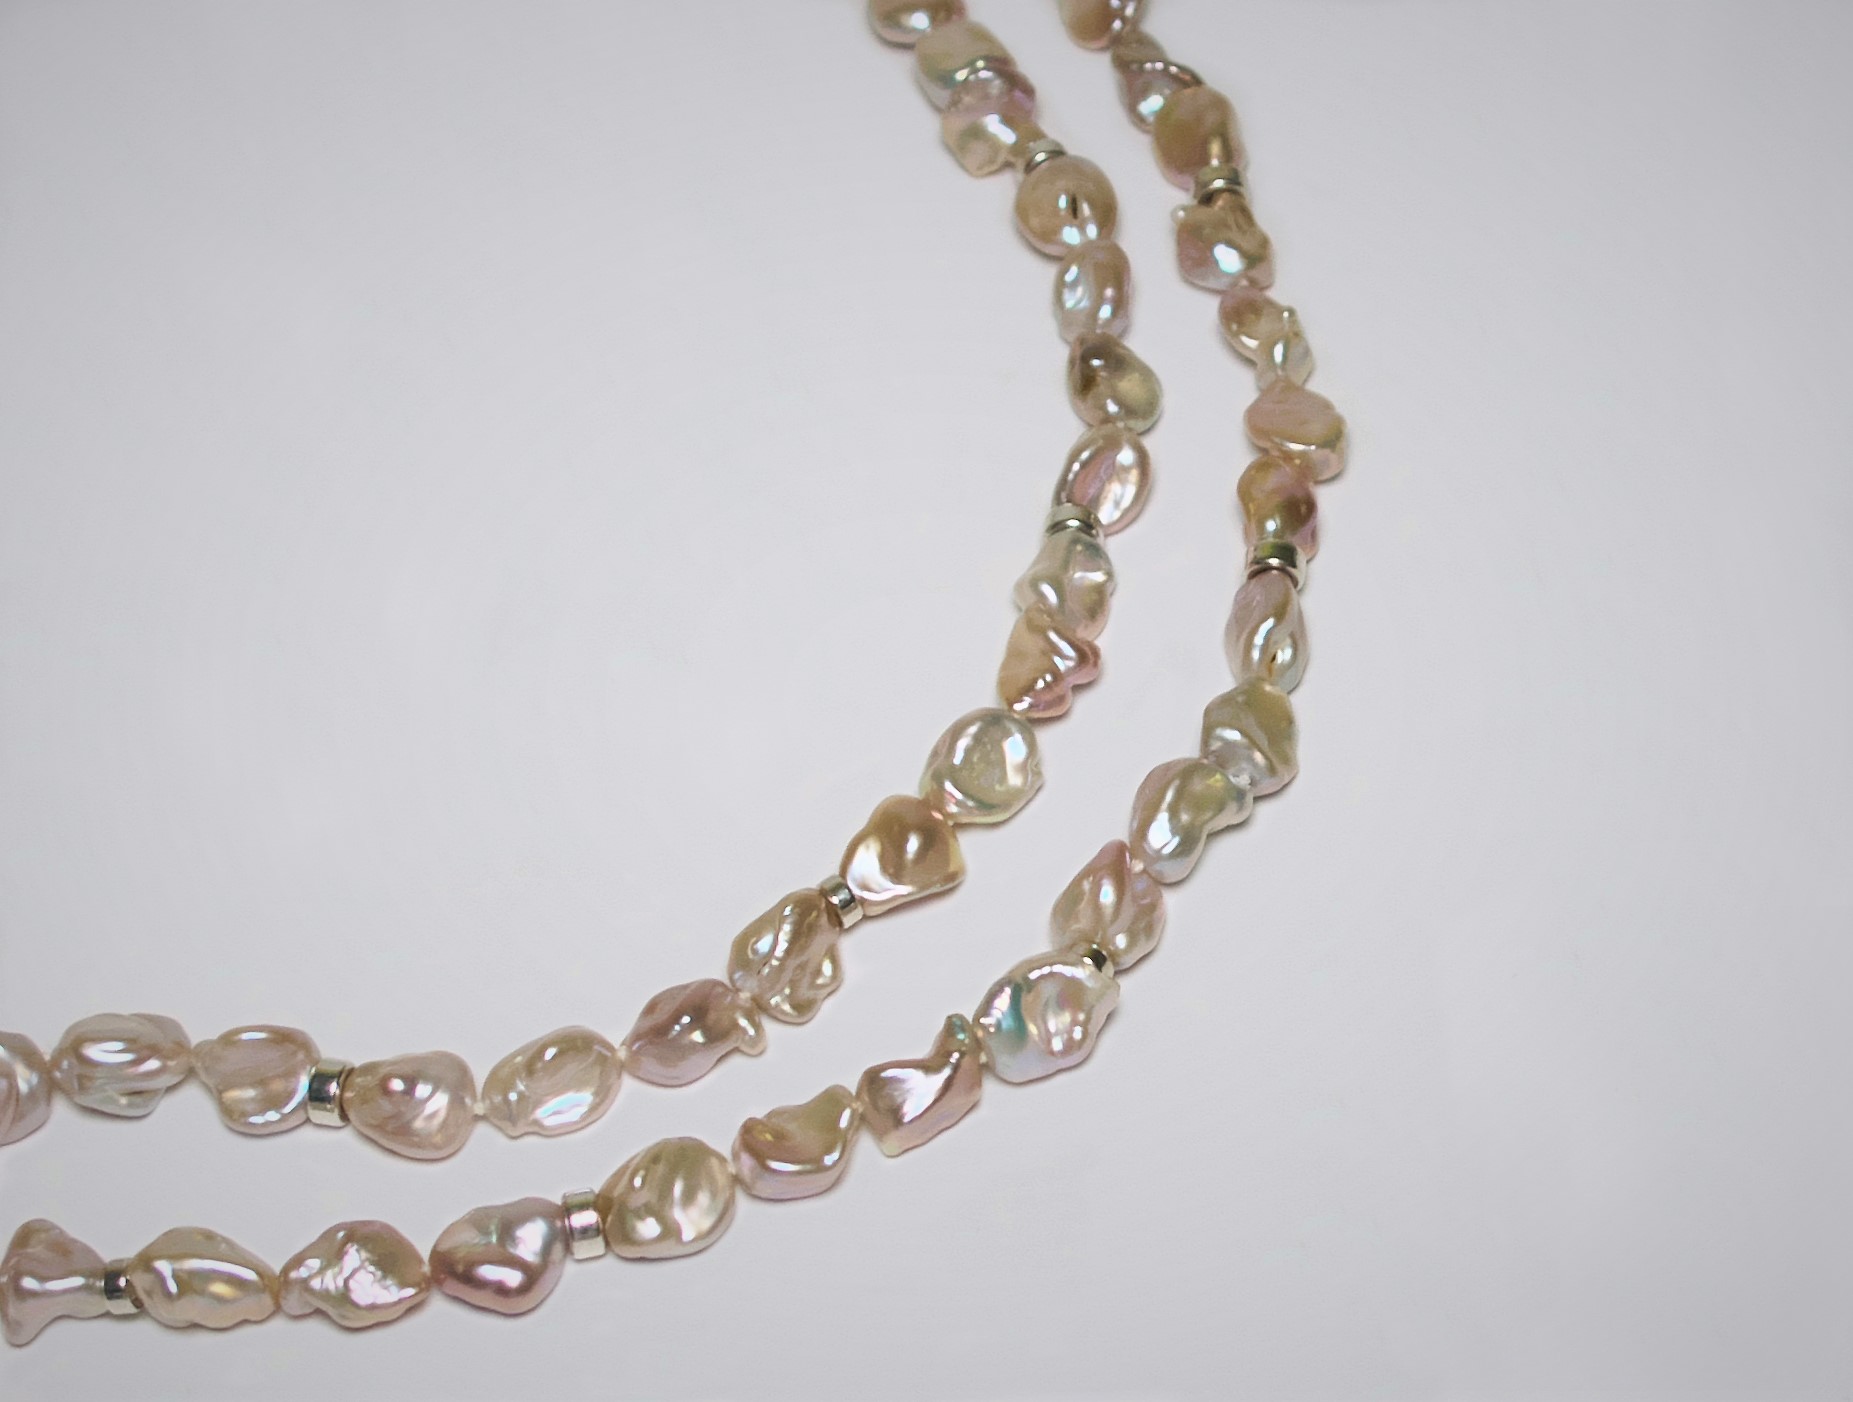 Keshi Perlenkette mit Karabiner­verschluss und Zierteilen aus Silber, 47 cm